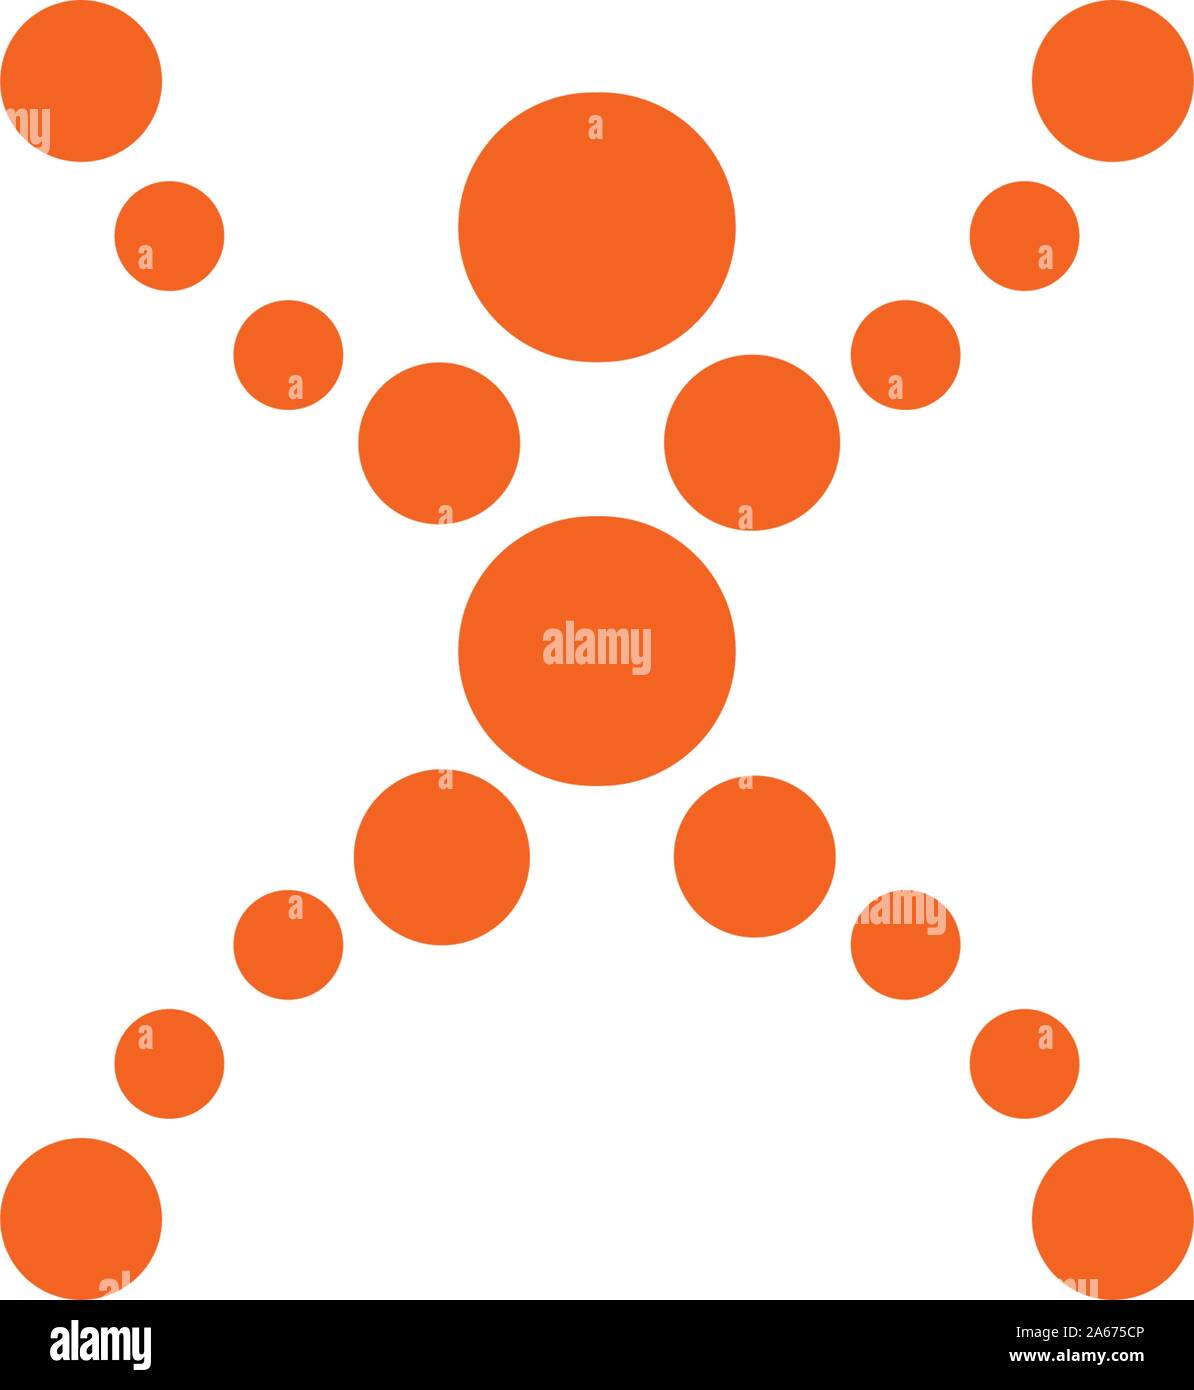 Abstrakte menschliche Figur von orange Kugeln in verschiedenen Größen, X-Position, Vektor logo tamplate. Menschliche Gesundheit und Energie Symbol, einfache Silhouette. Zusammenfassung Stock Vektor